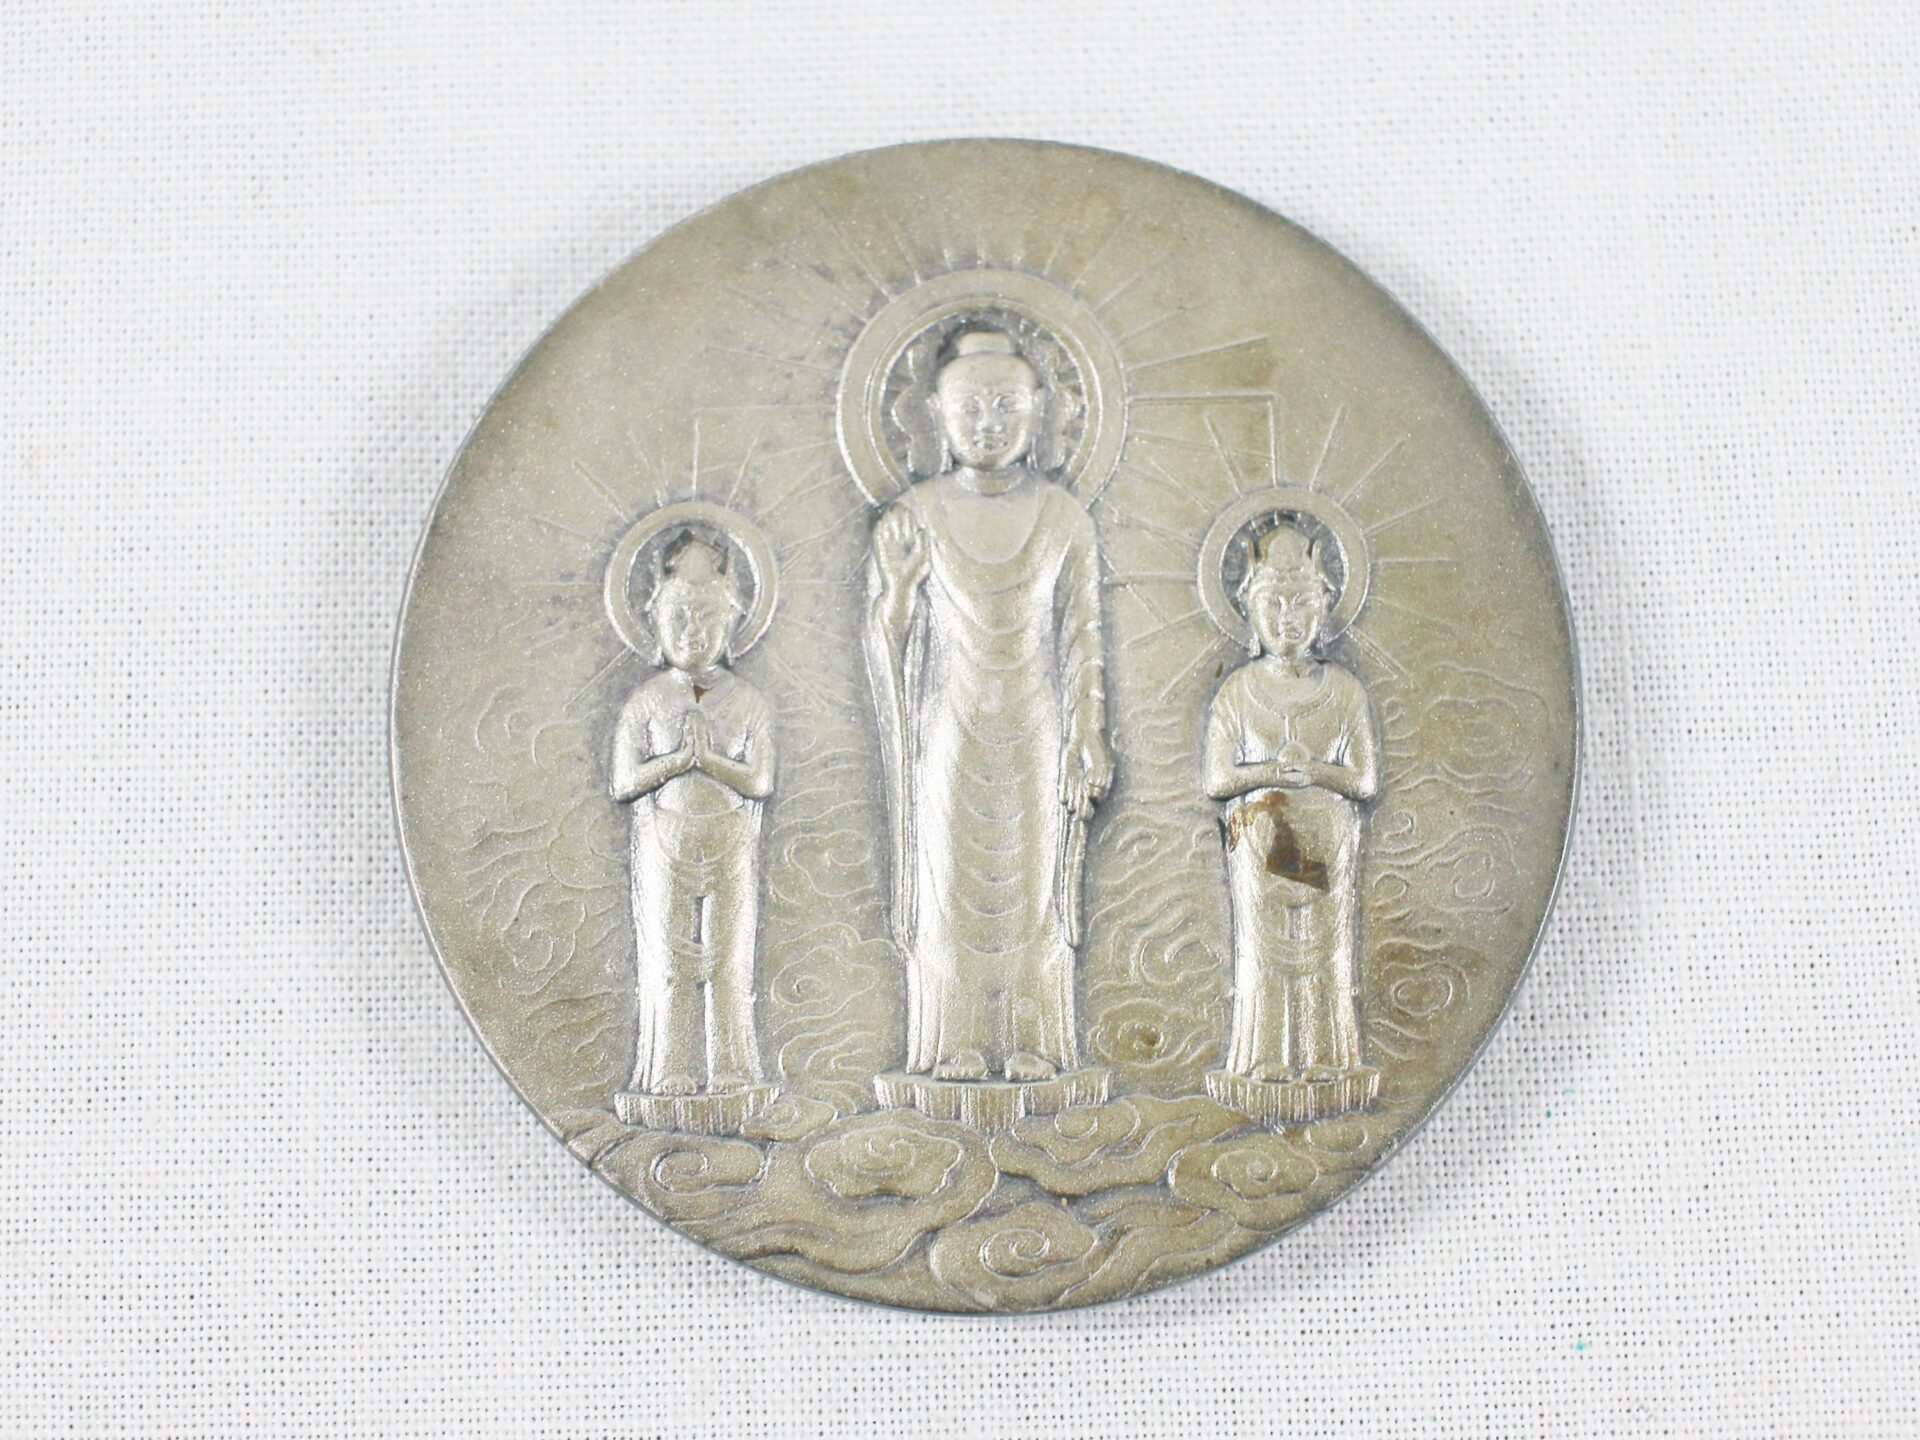 中古品 純銀コイン 81.9グラム 信州善光寺 御開帳記念純銀メダルを熊本 